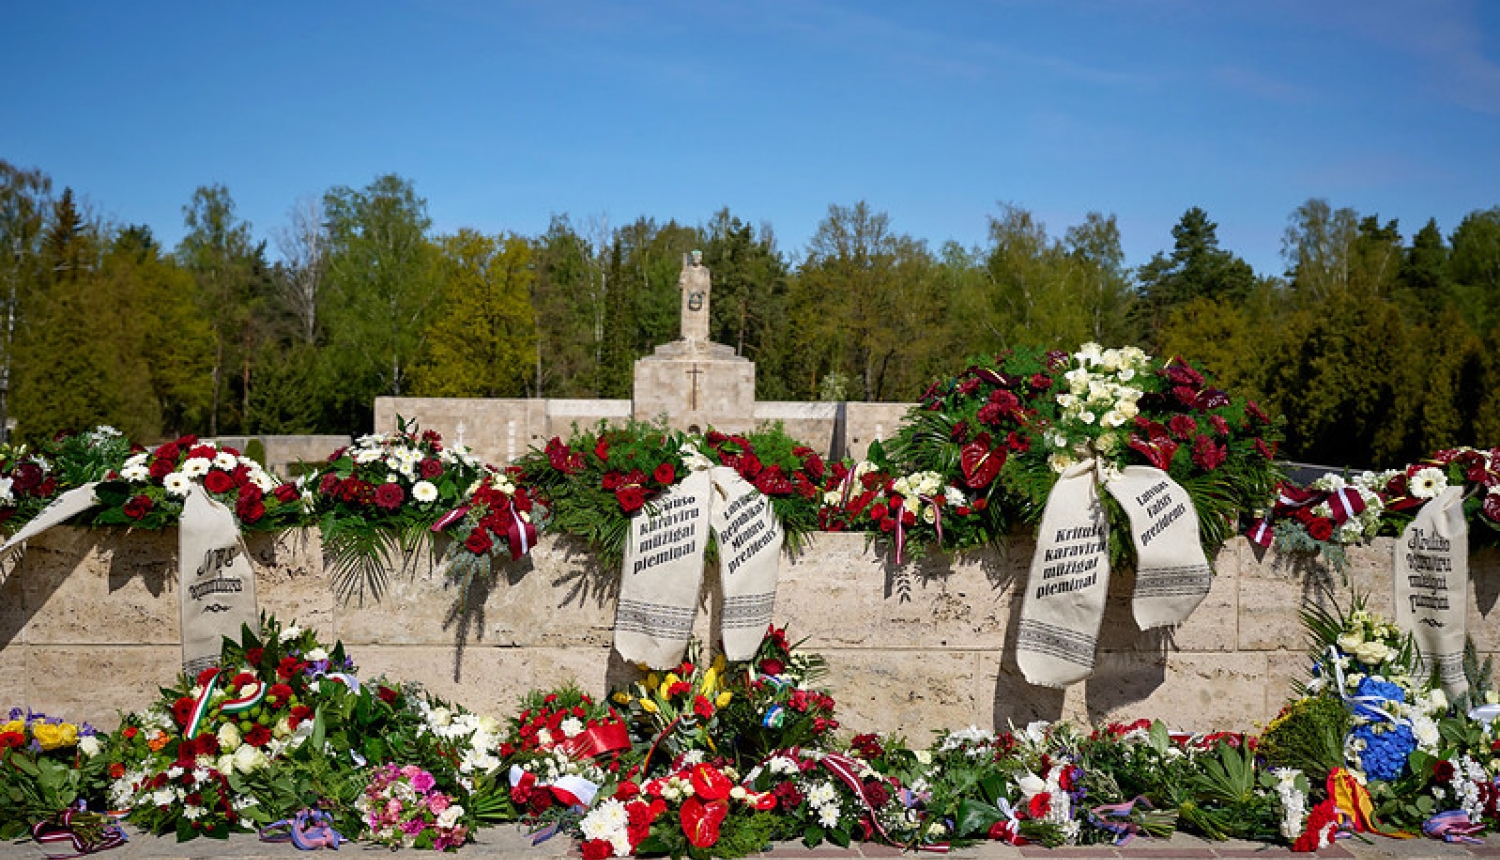 Brāļu kapu siena ar Māti Latviju. Ziedu vainagi ar lentām kritušo karavīru piemiņai. 